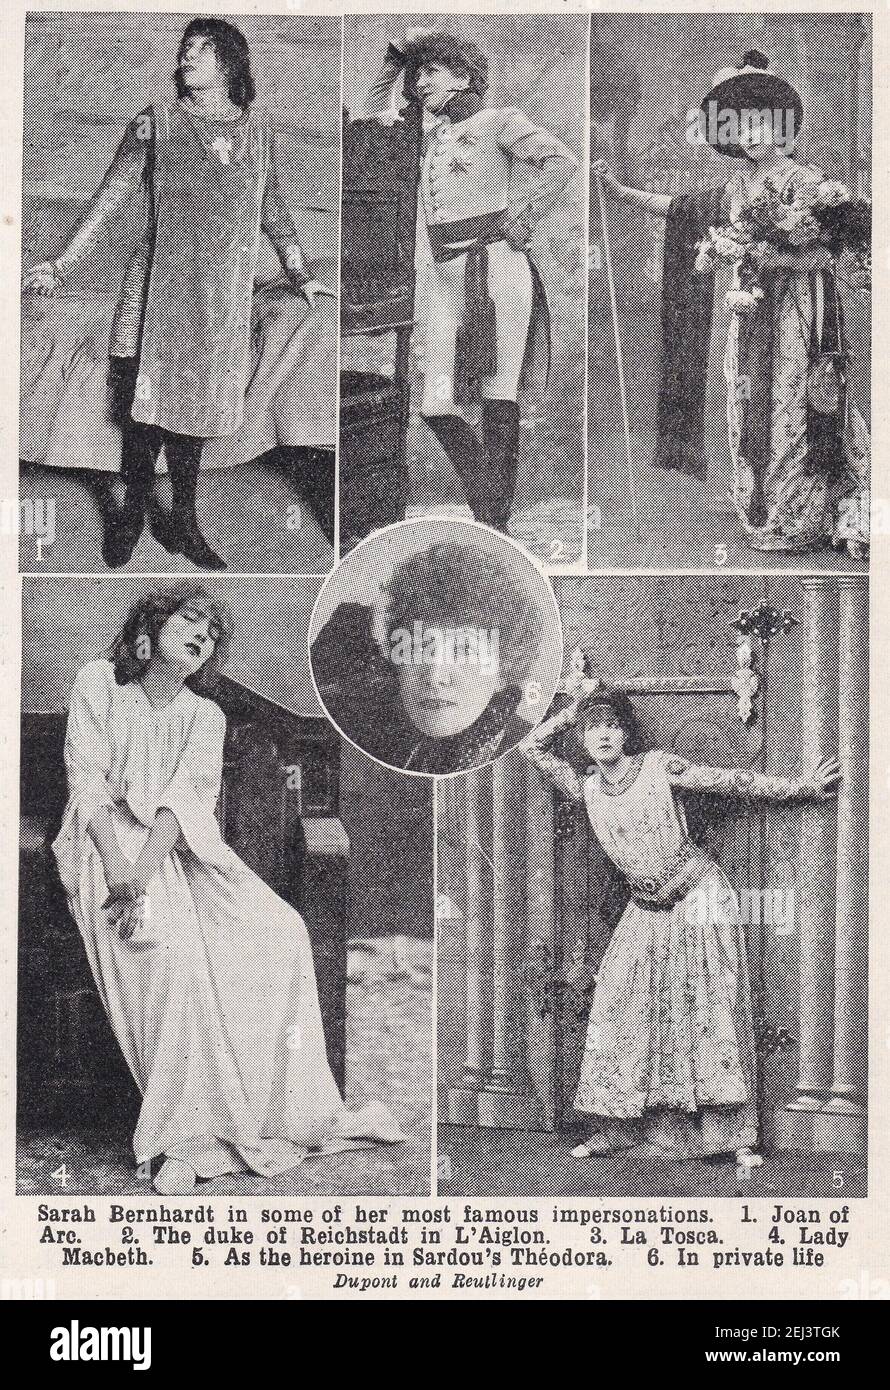 Sarah Bernhardt in einigen ihrer berühmtesten Imitationen. Stockfoto